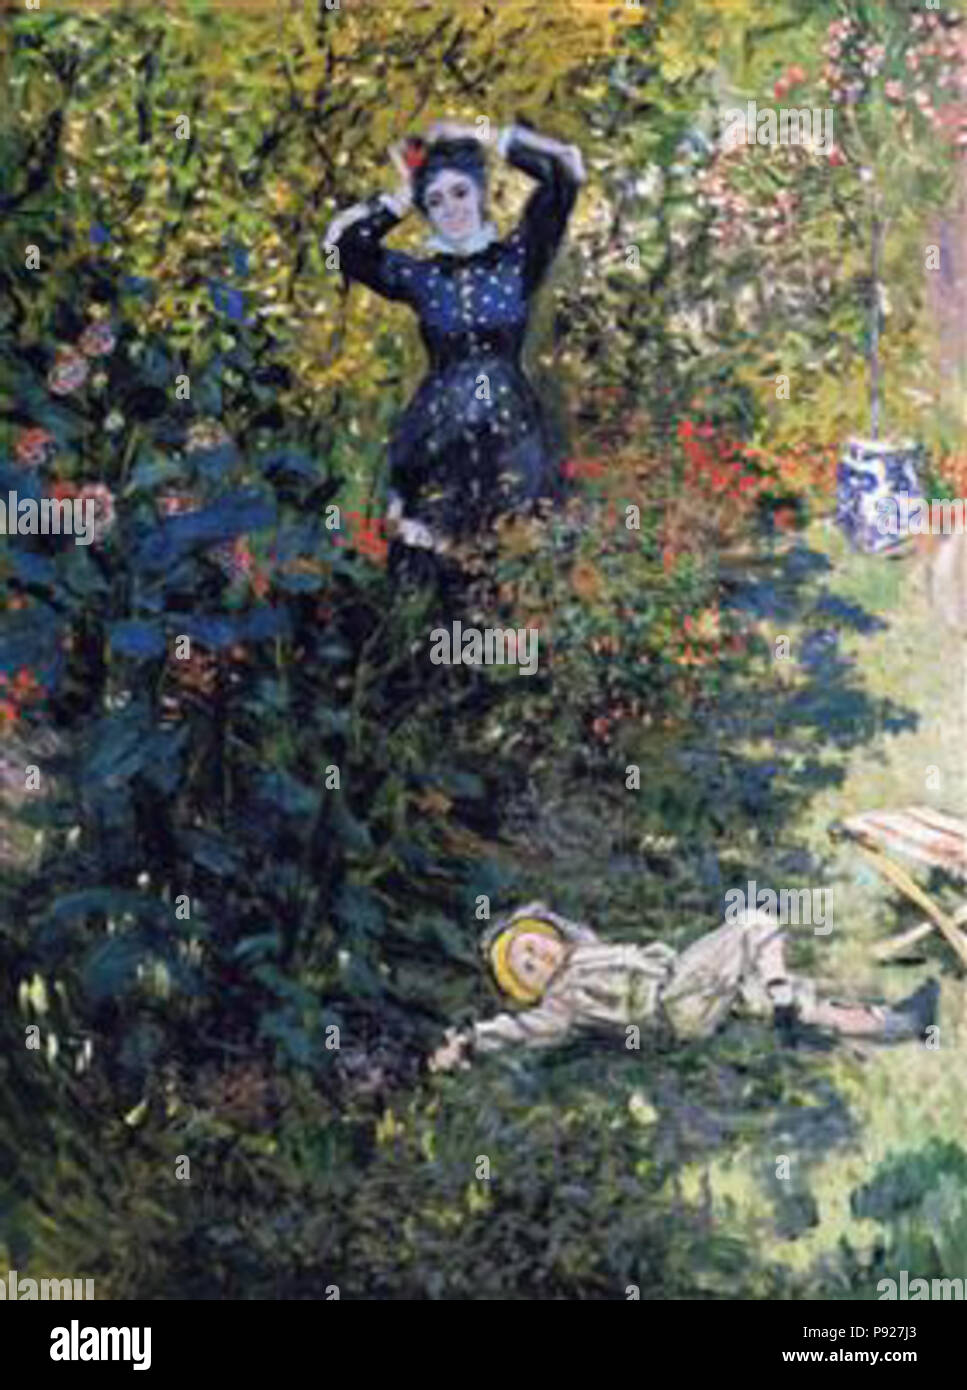 . 421 Monet-Camille-und-Jean-Claude Monet-in-der-garten-at-argenteuil Stockfoto